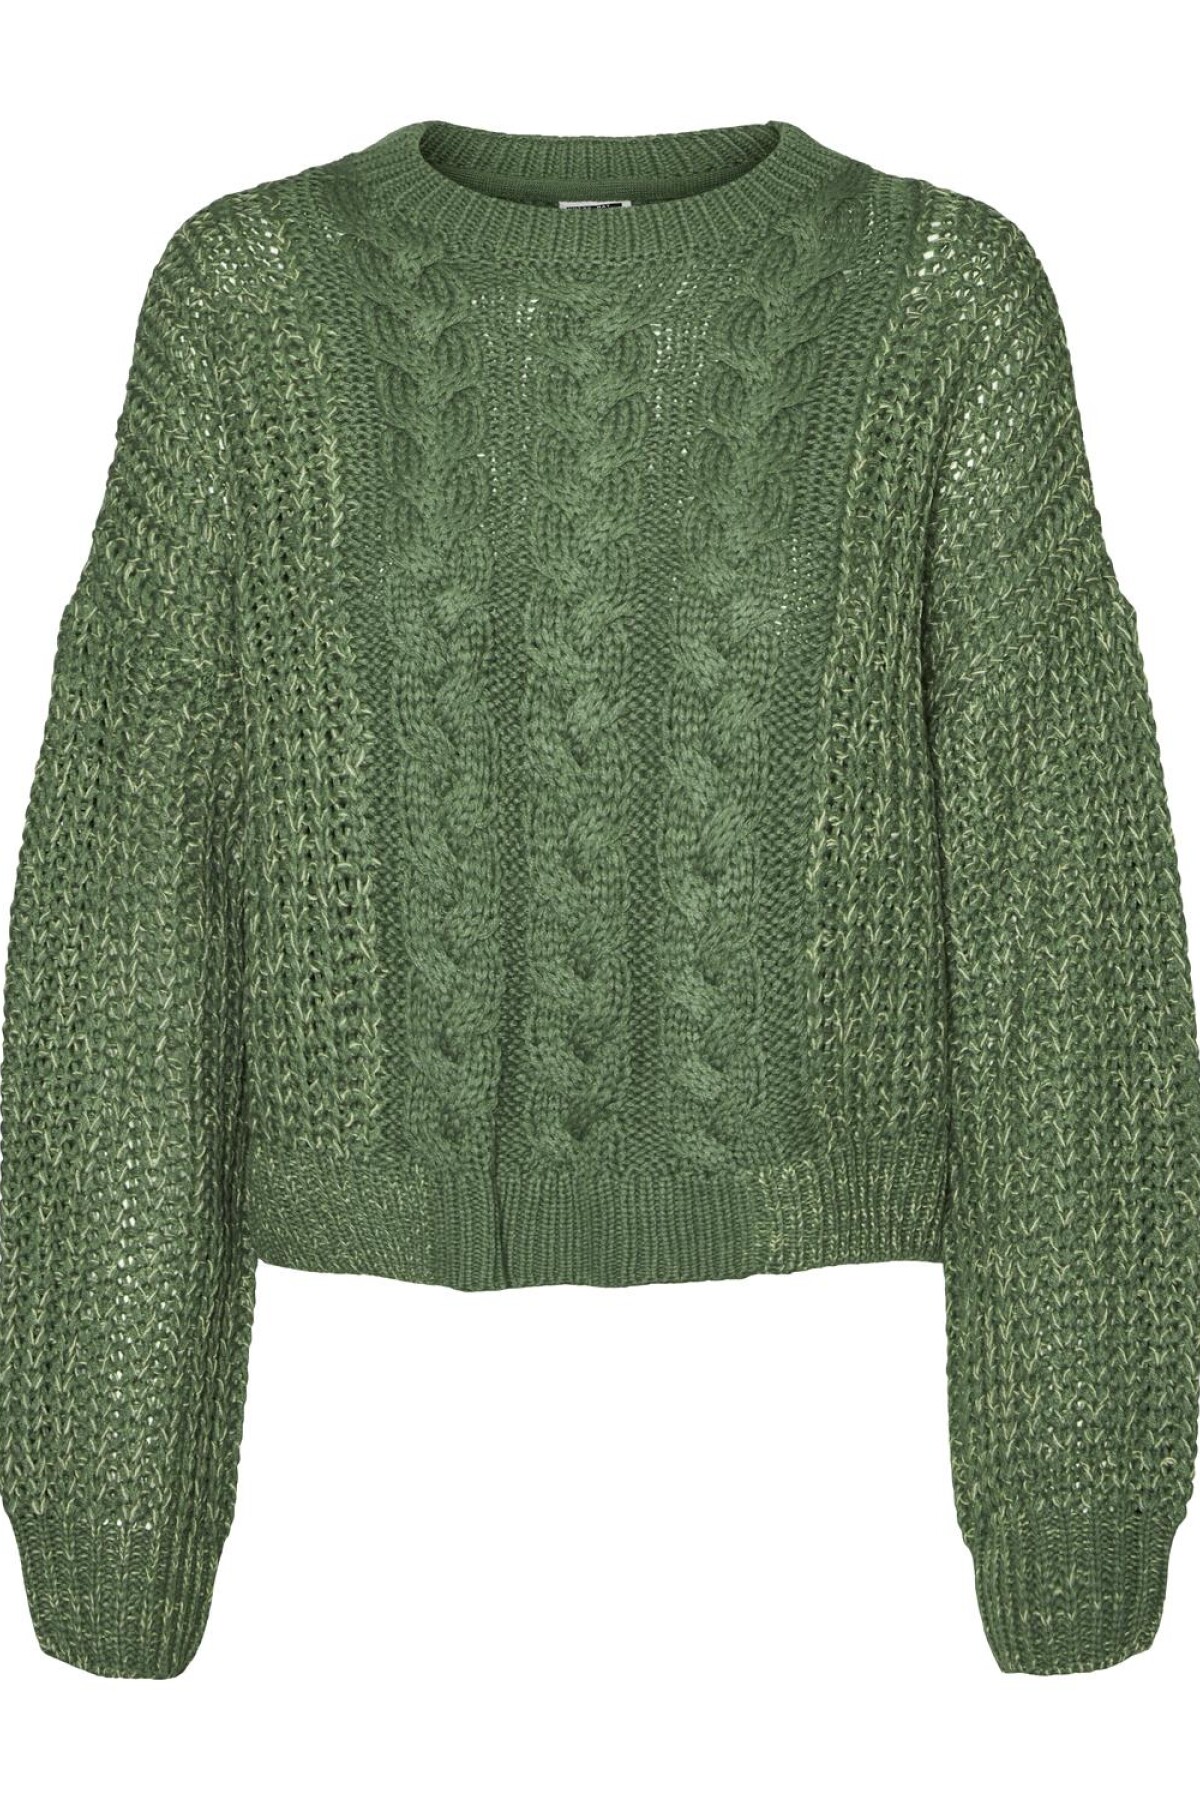 Sweater Lori Dark Ivy